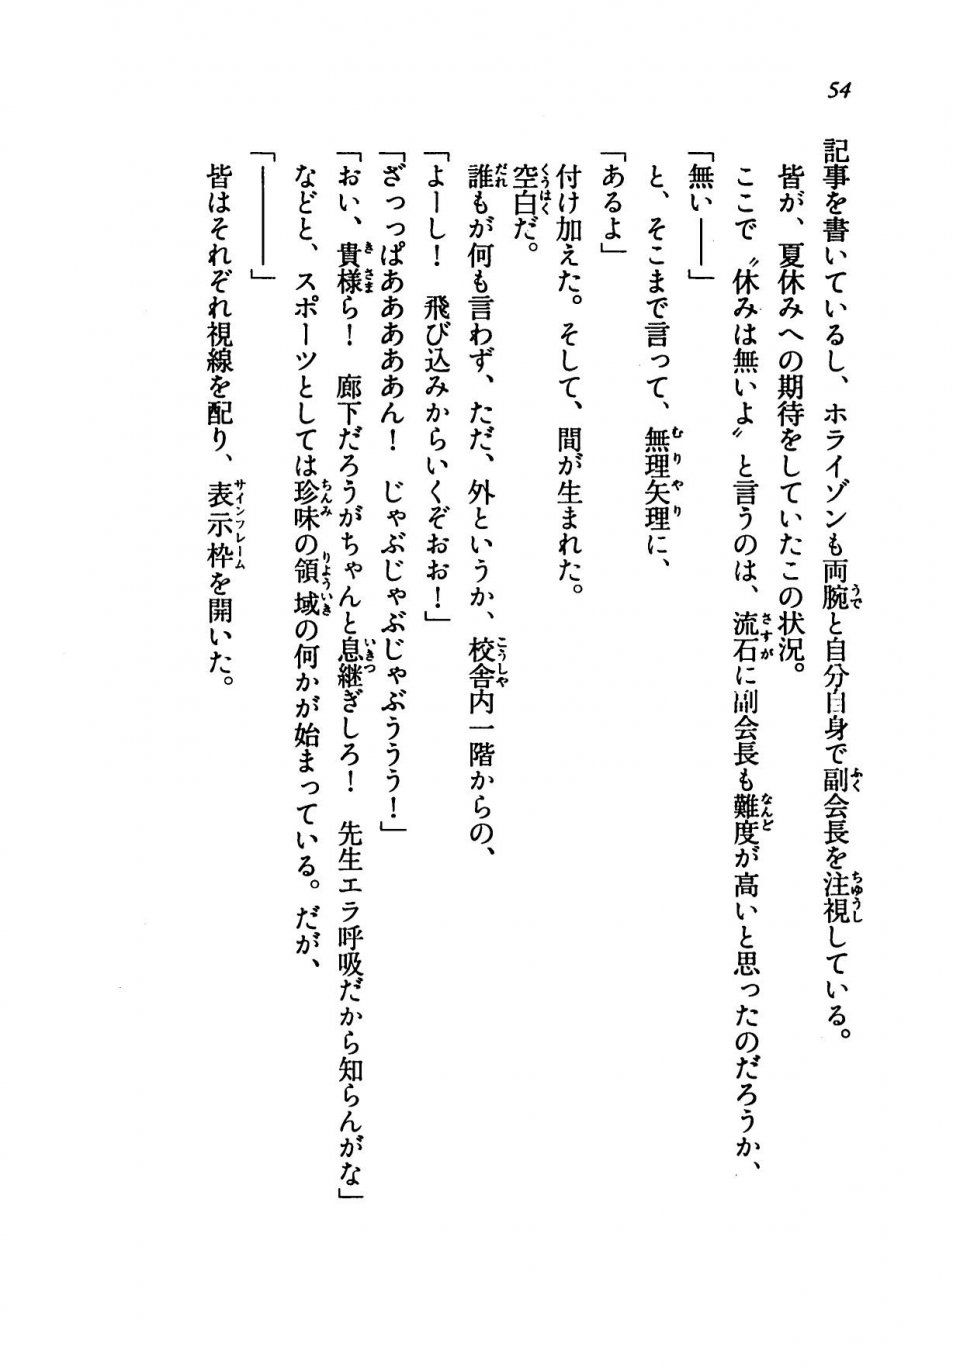 Kyoukai Senjou no Horizon LN Vol 19(8A) - Photo #54